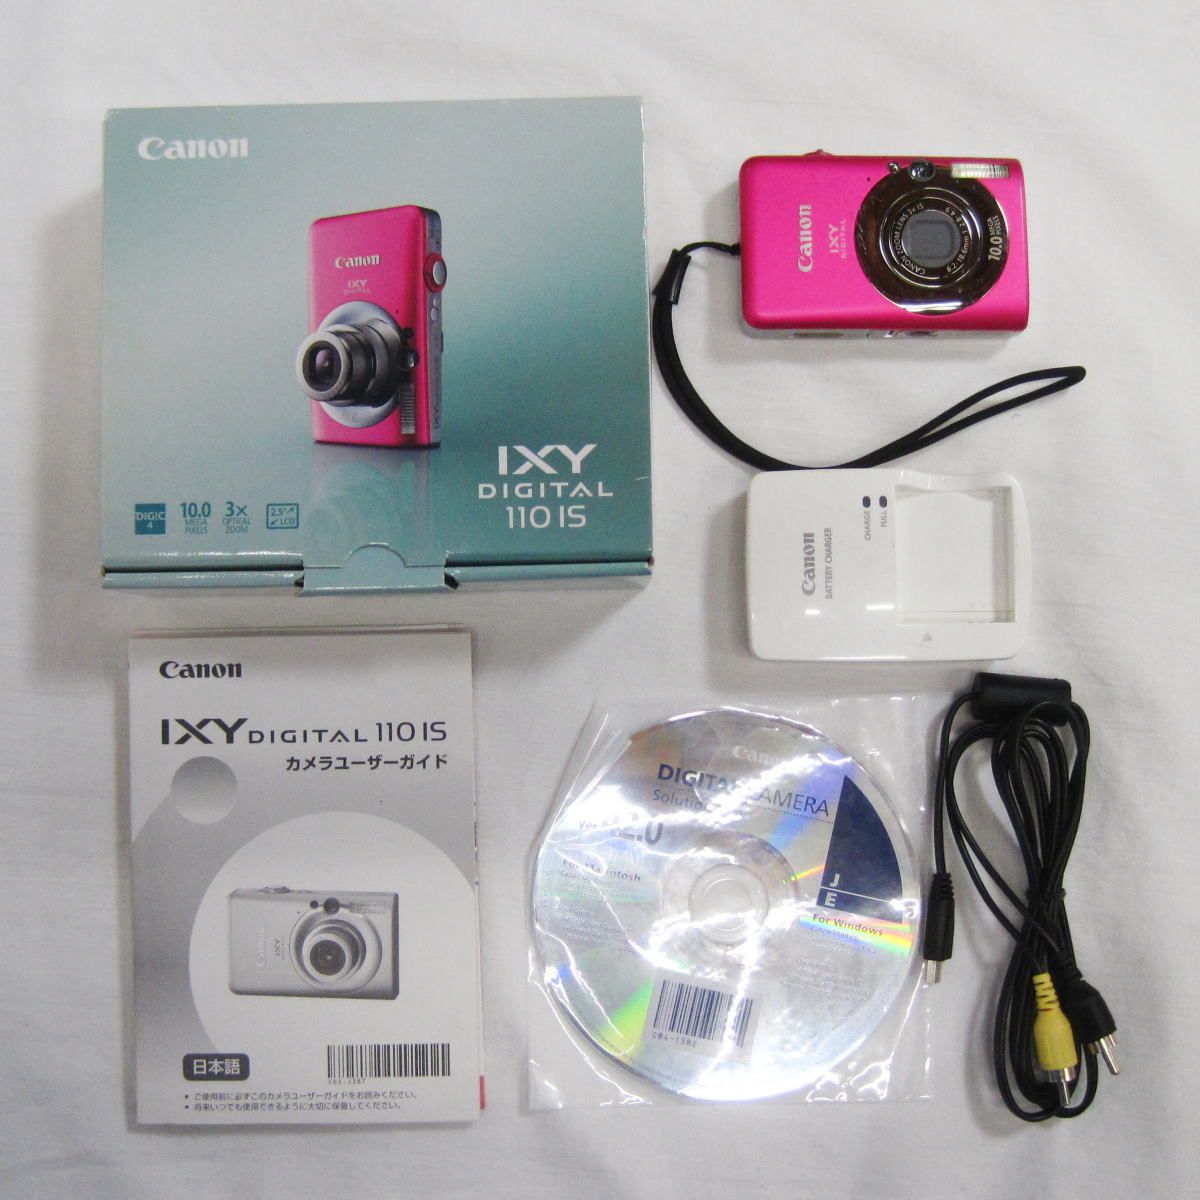 ○ Canon デジタルカメラ IXY DIGITAL 110 IS デジカメ ピンク 